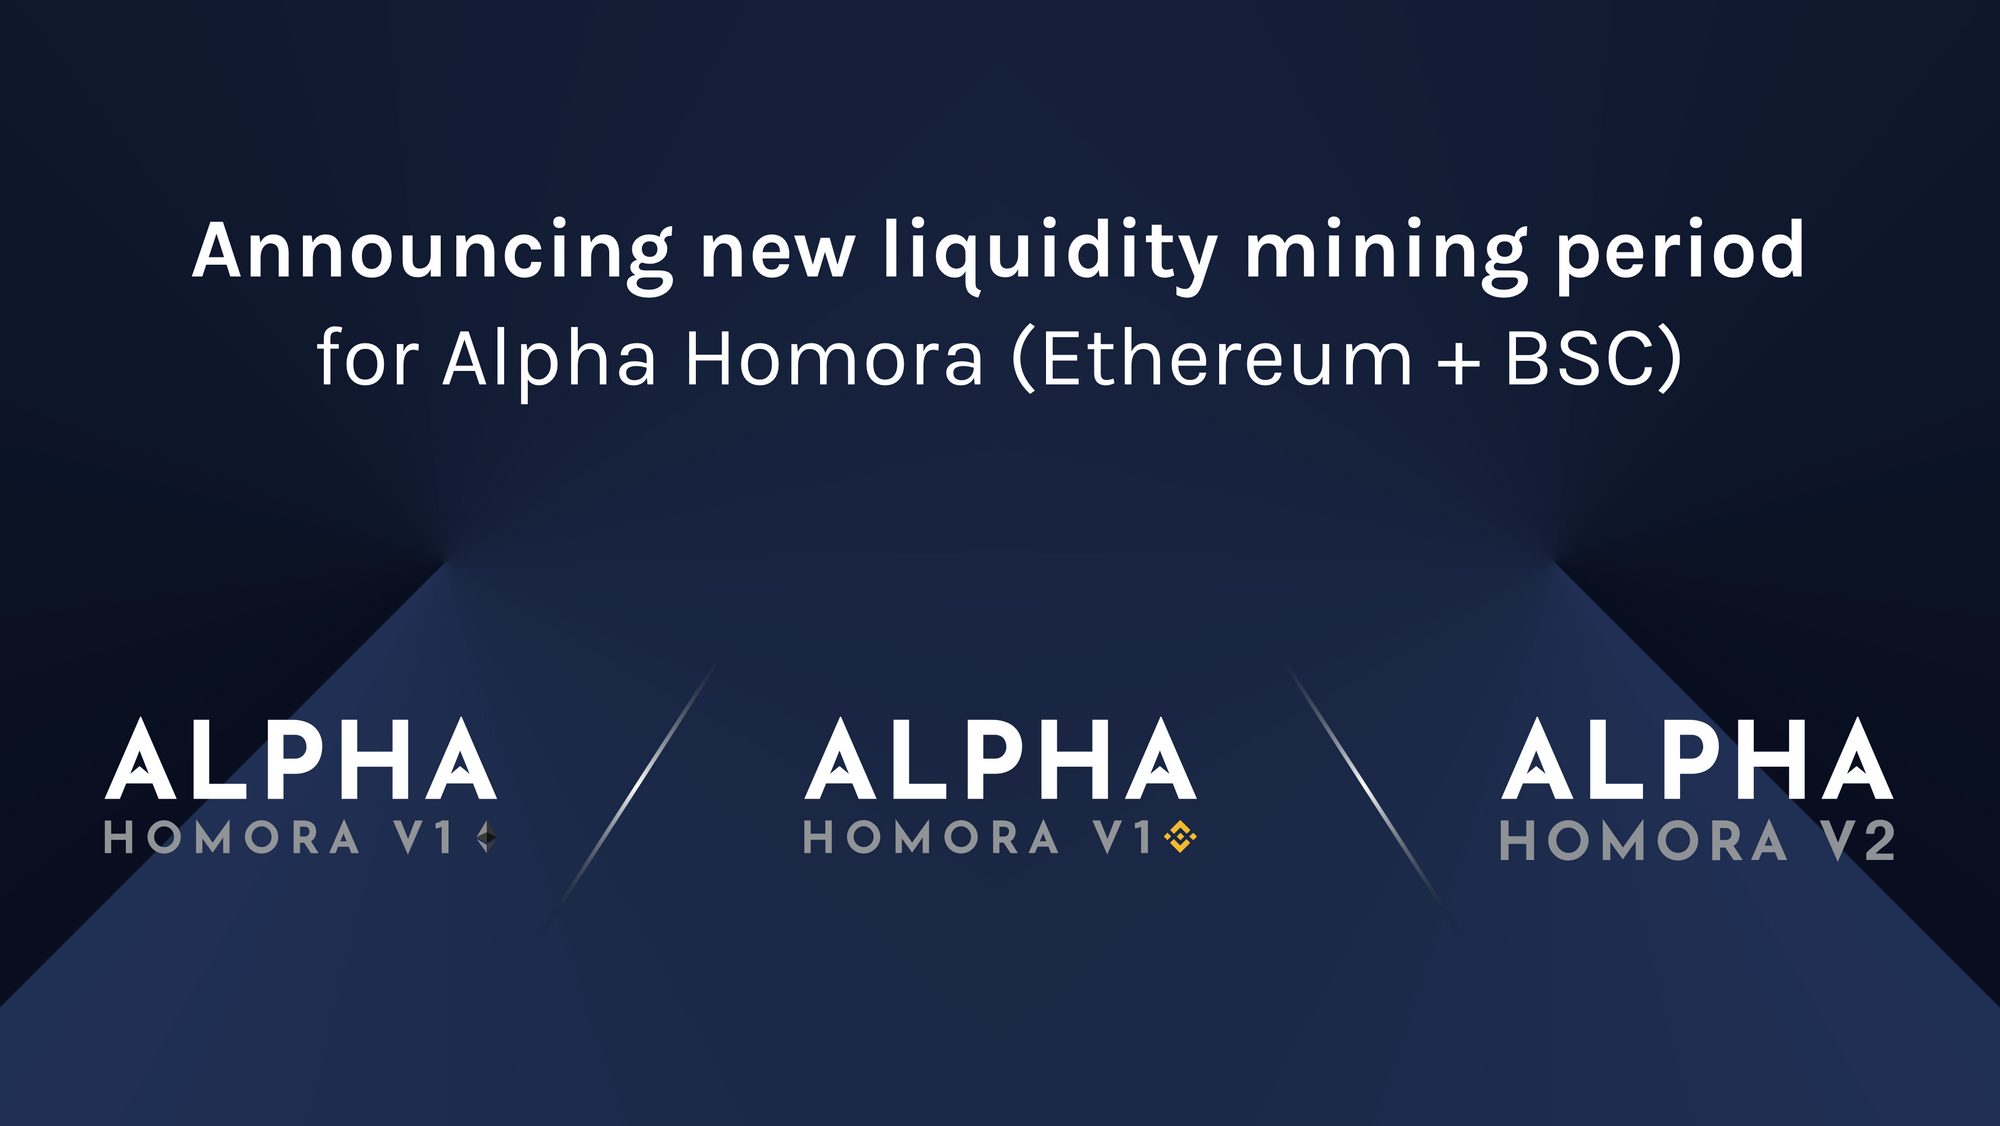 New Liquidity Mining Period for Alpha Homora V1 and V2